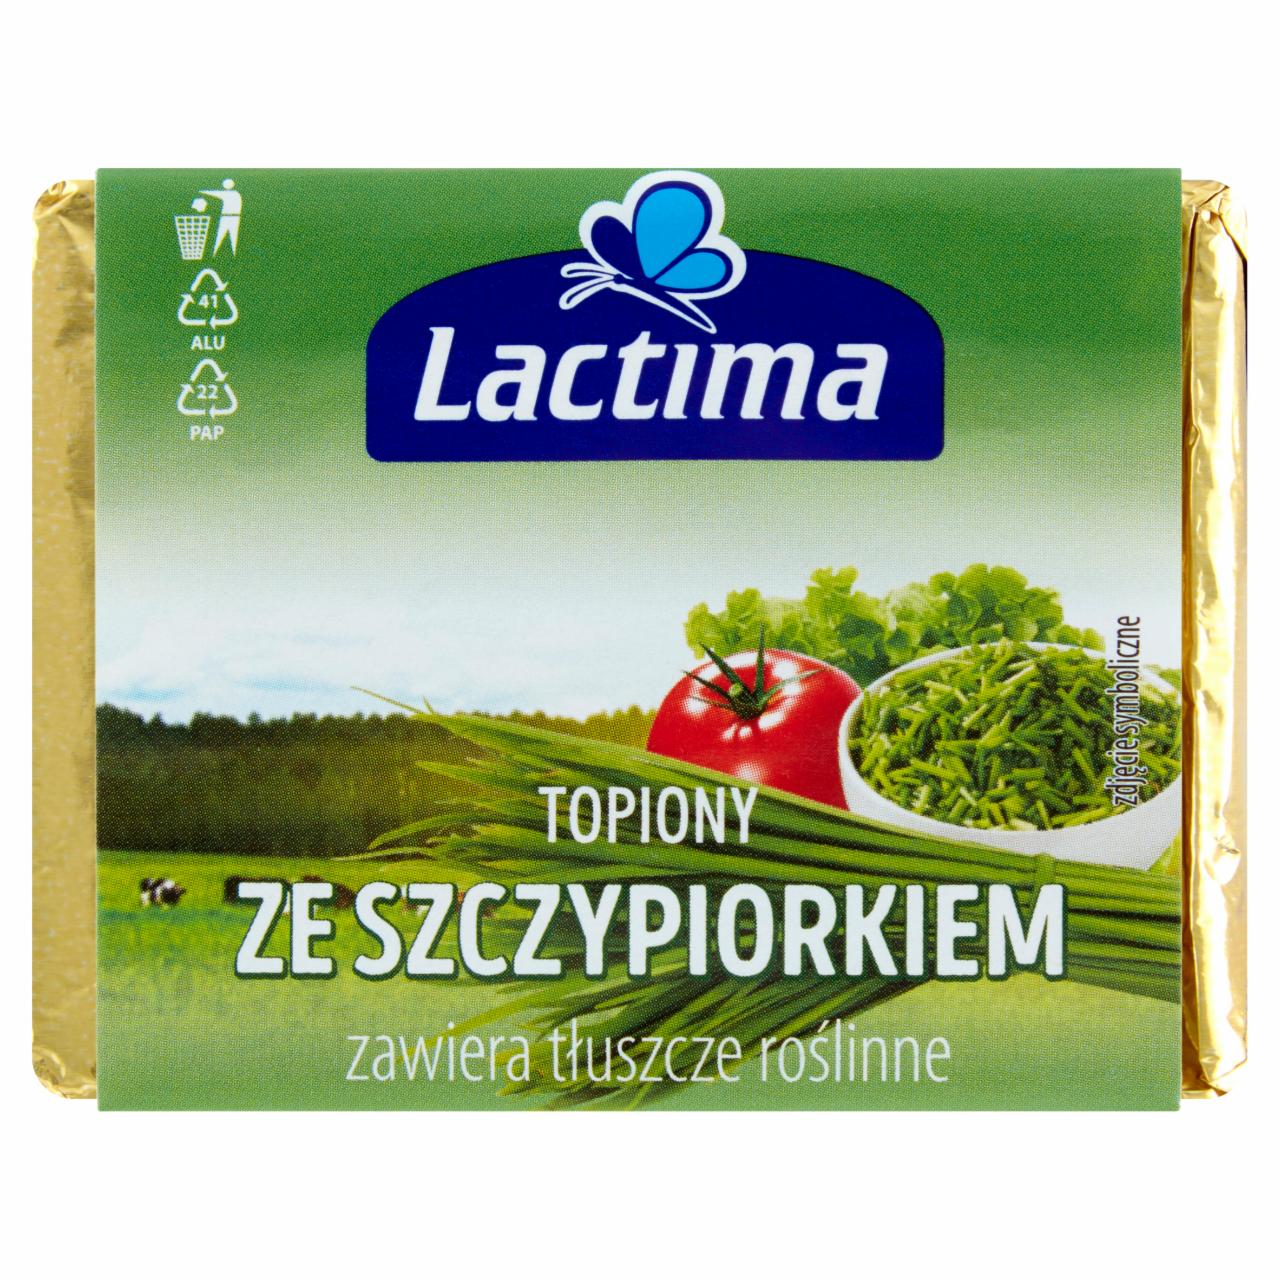 Zdjęcia - Lactima Produkt seropodobny topiony ze szczypiorkiem 100 g